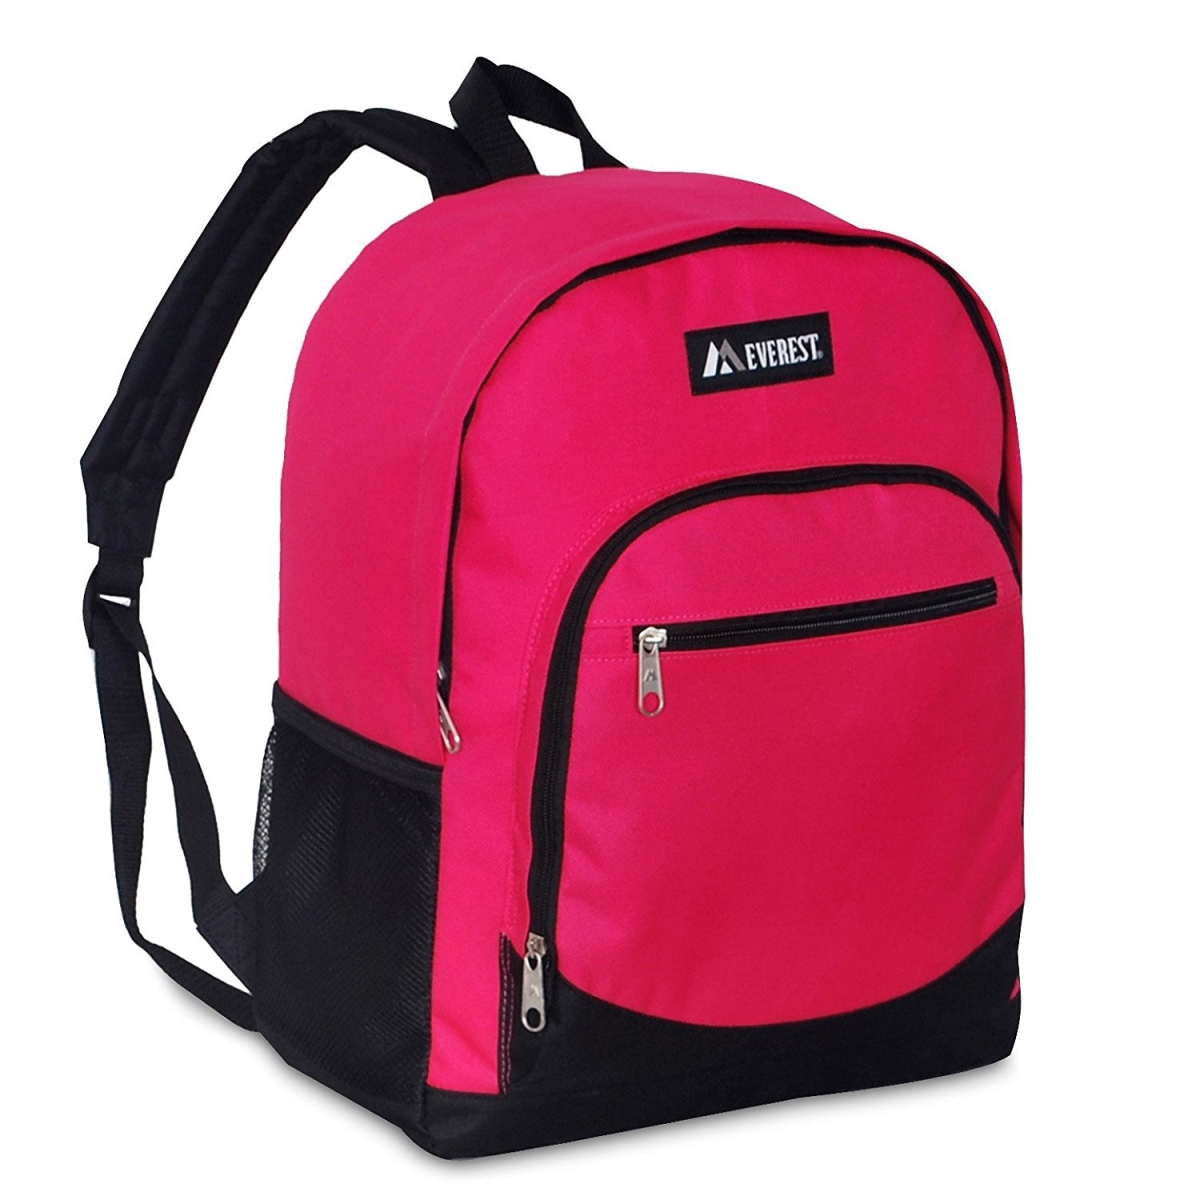 6045-hpk-bk Casual Backpack With Side Mesh Pocket - Hot Pink & Black